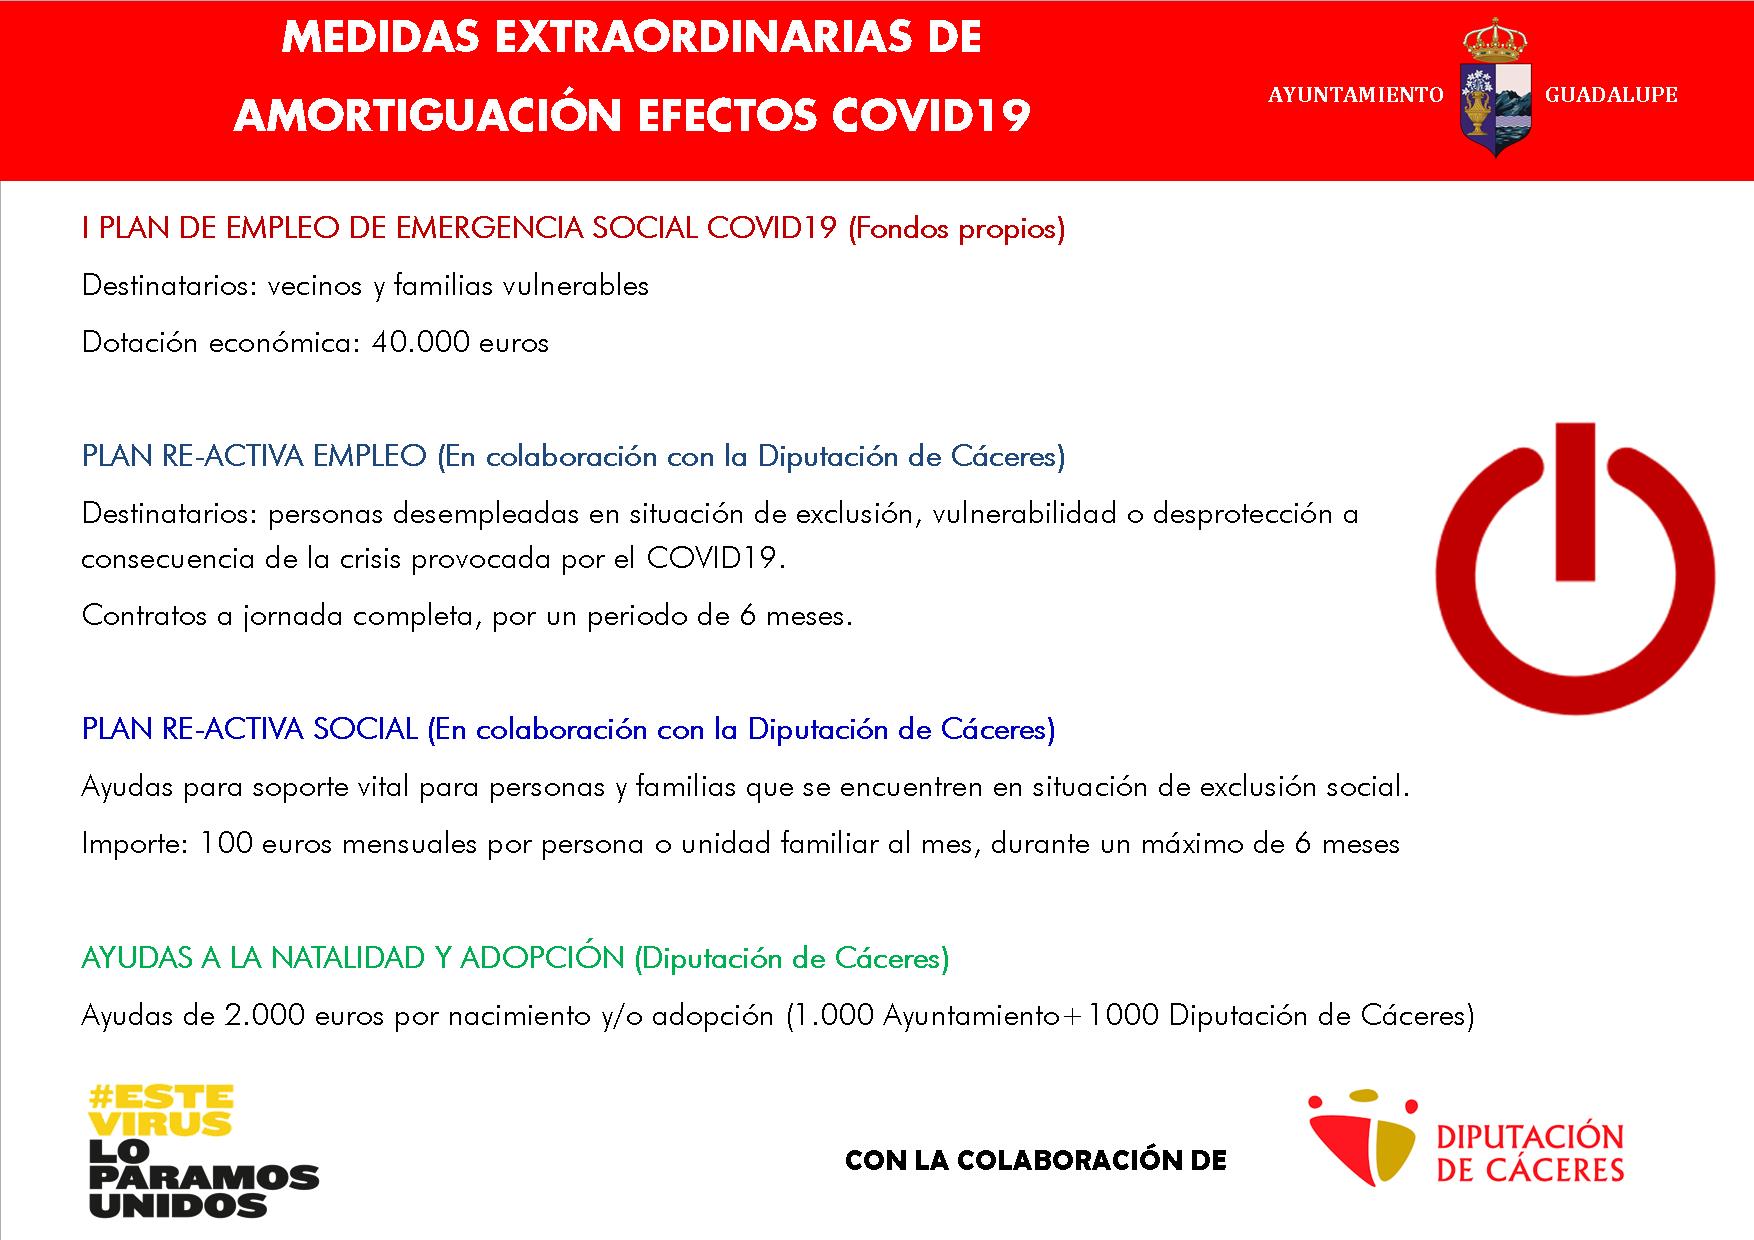 Medidas extraordinarias de amortiguación COVID-19 2020 - Guadalupe (Cáceres)